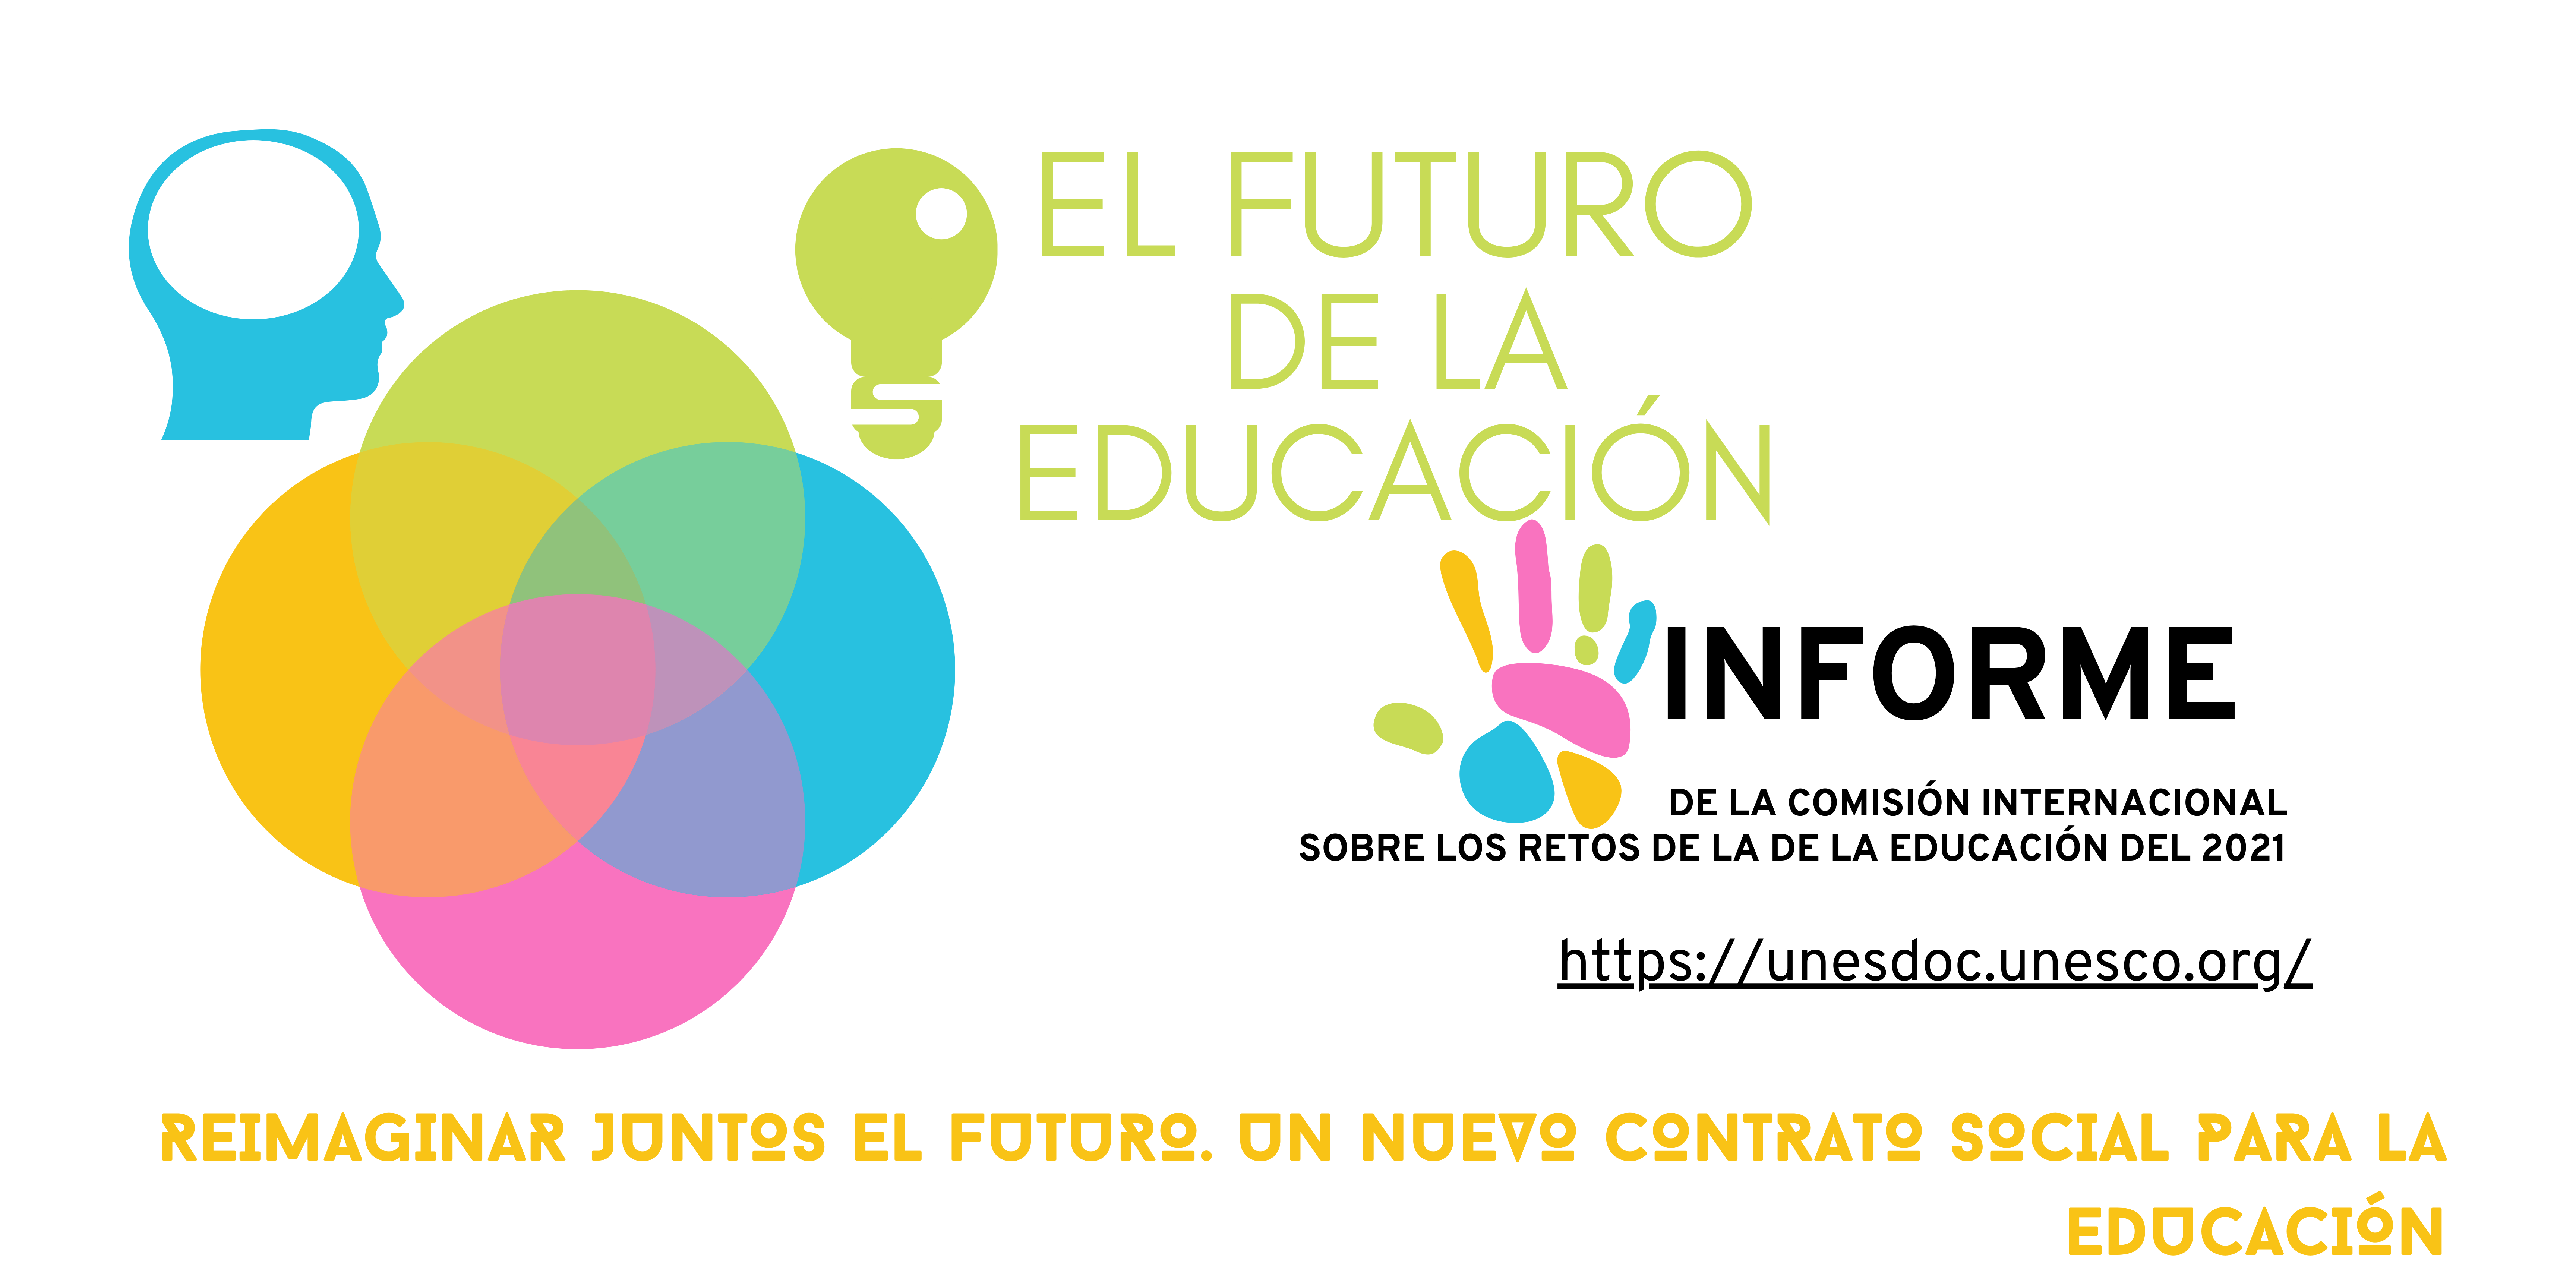 El futuro de la Educación Informe Unesco. Interculturalidad